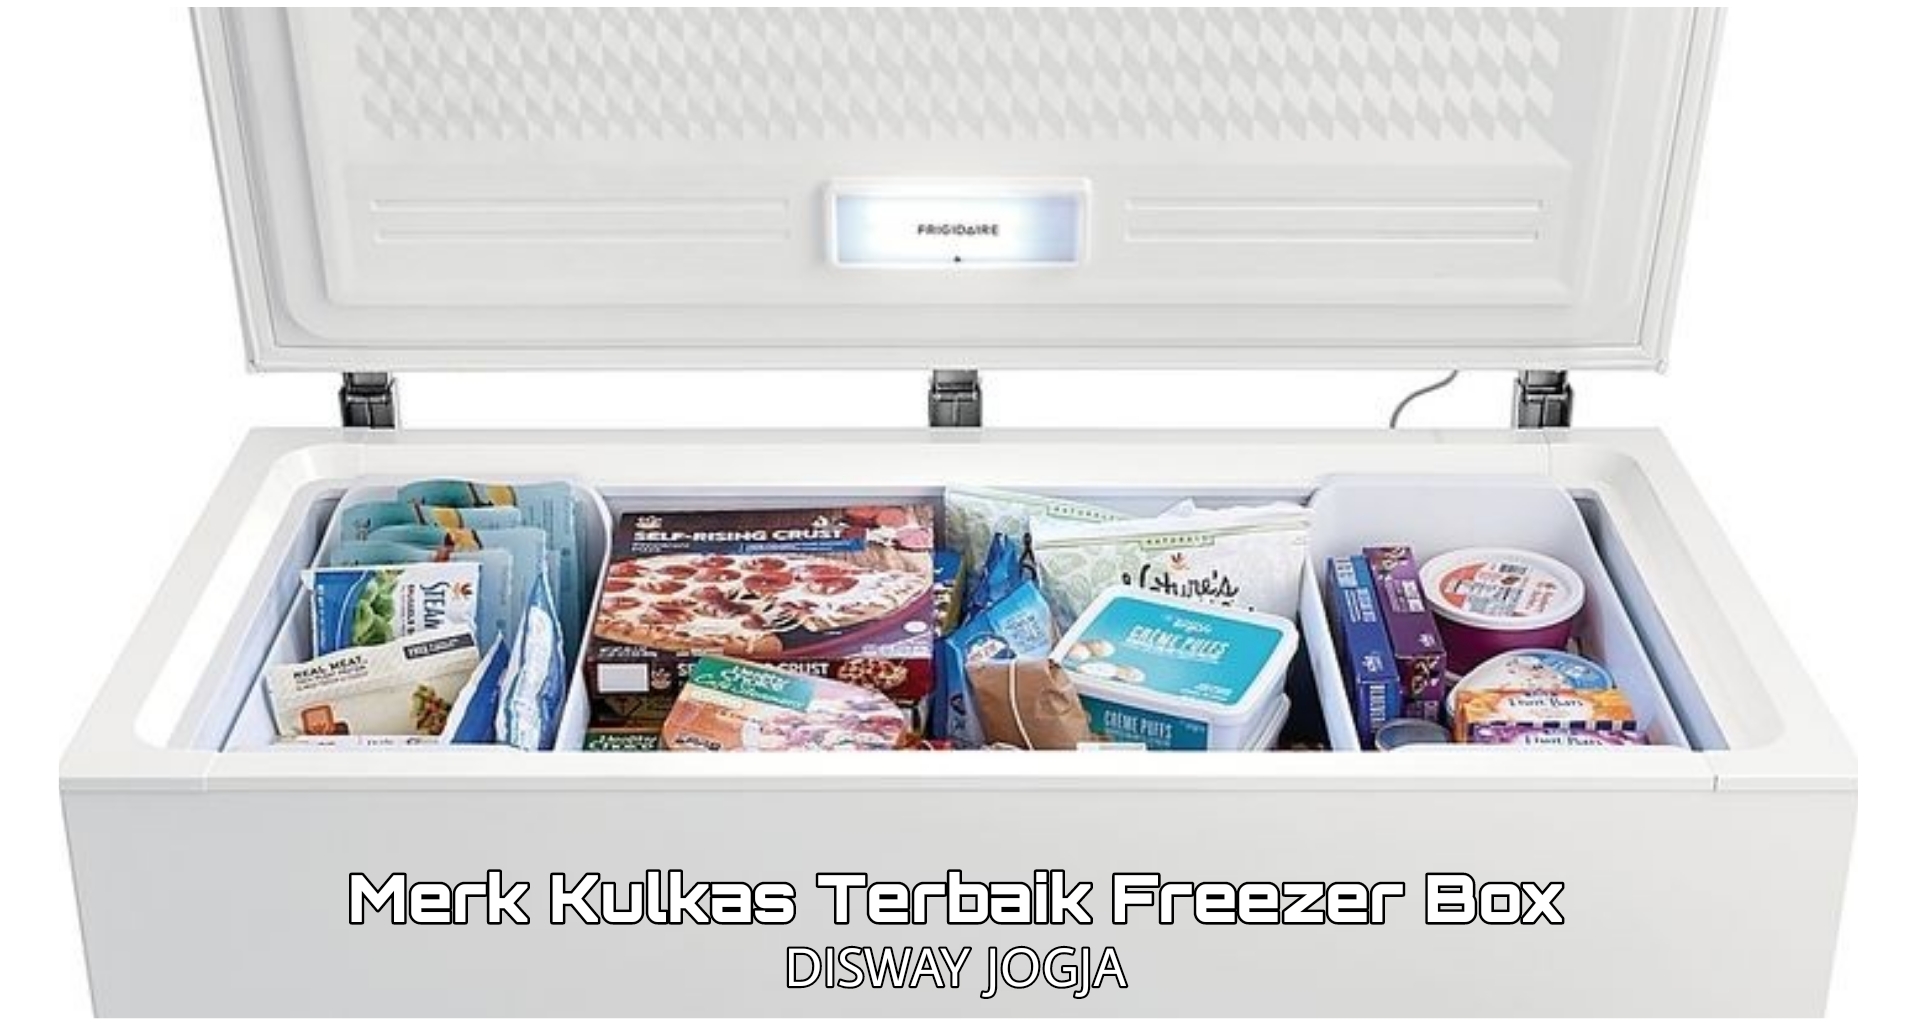 Rekomendasi Merek Kulkas Terbaik Jenis Freezer Box, No. 4 Suhu Dinginnya Tahan Hingga 48 Jam Tanpa Listrik